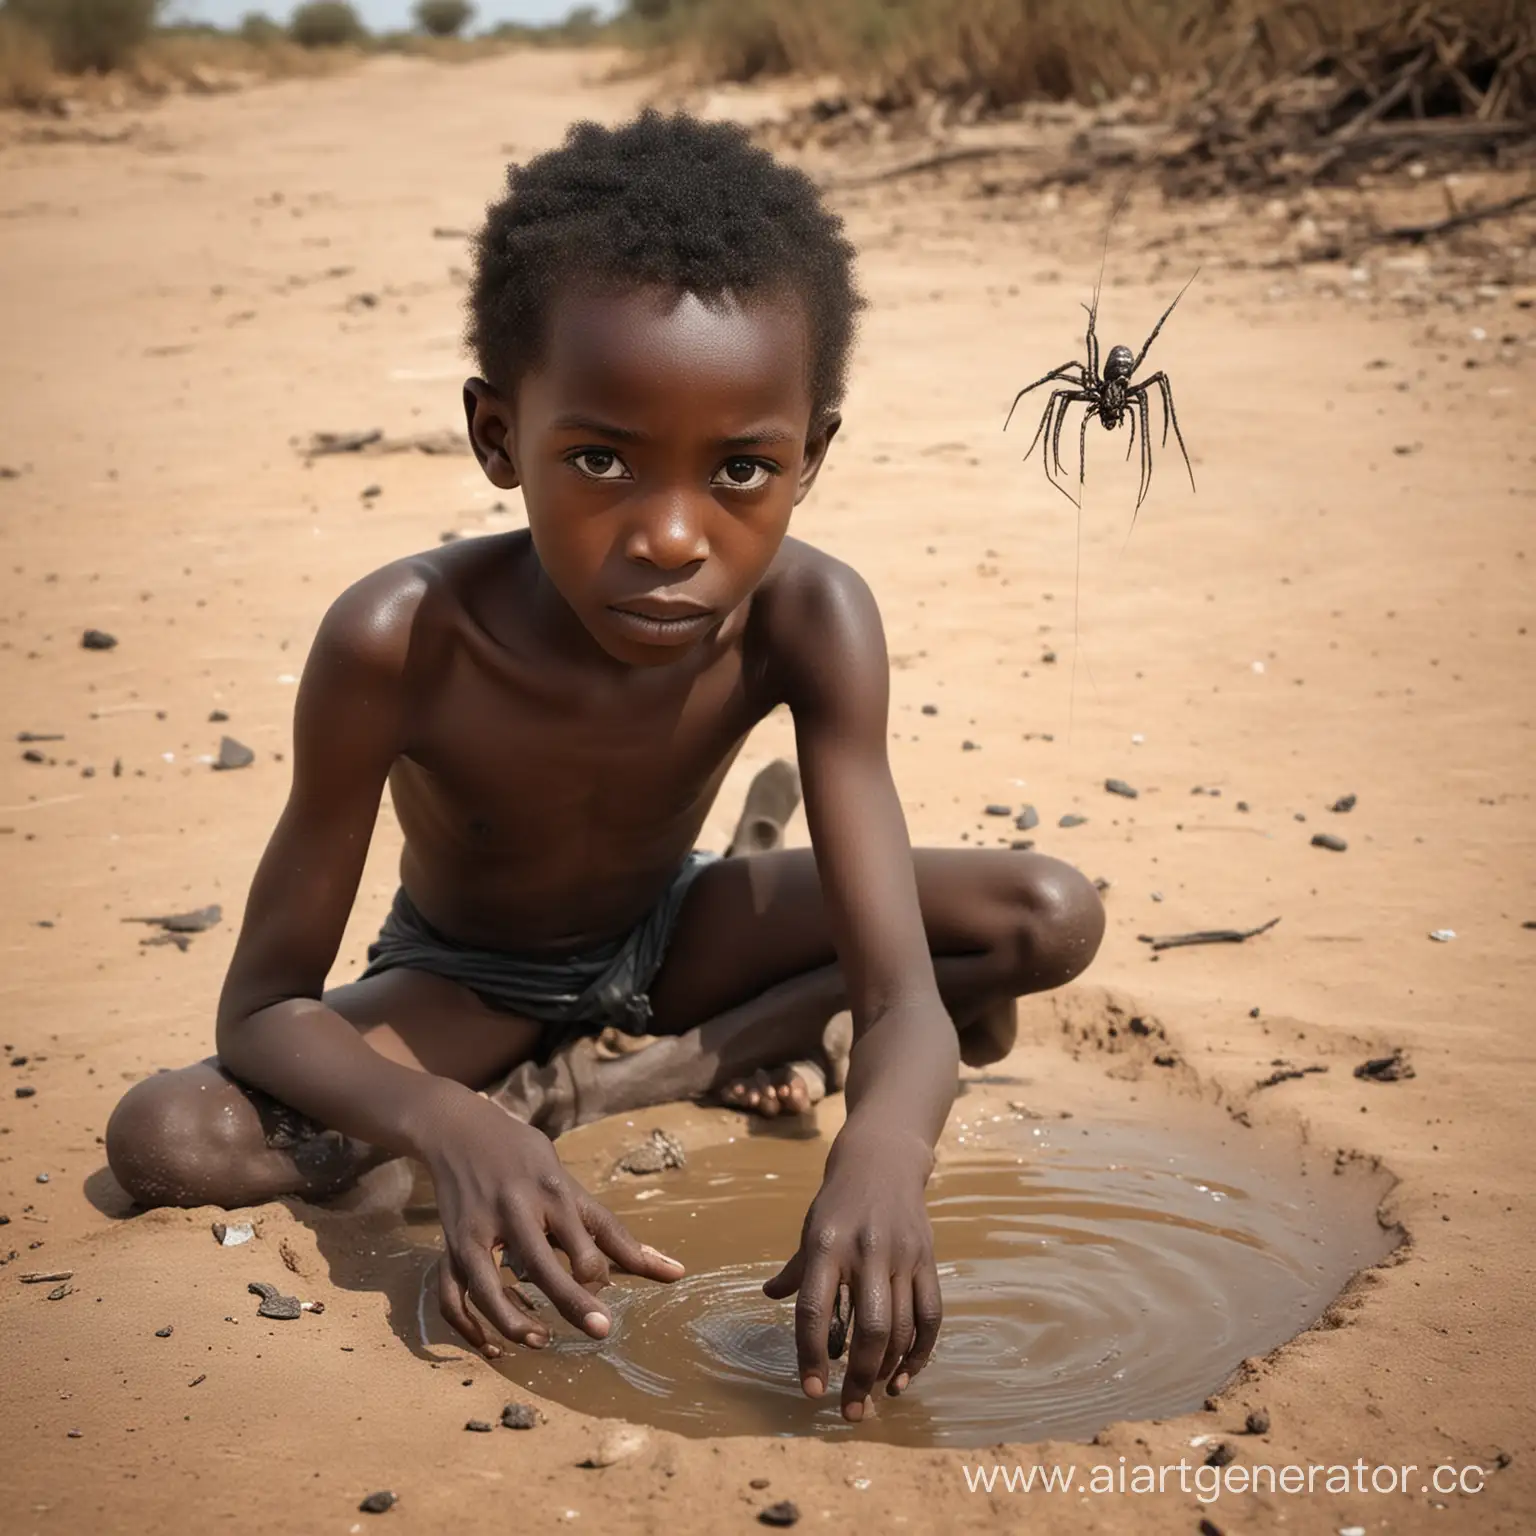 African-Water-Spider-Thief-amidst-Starving-Black-Children